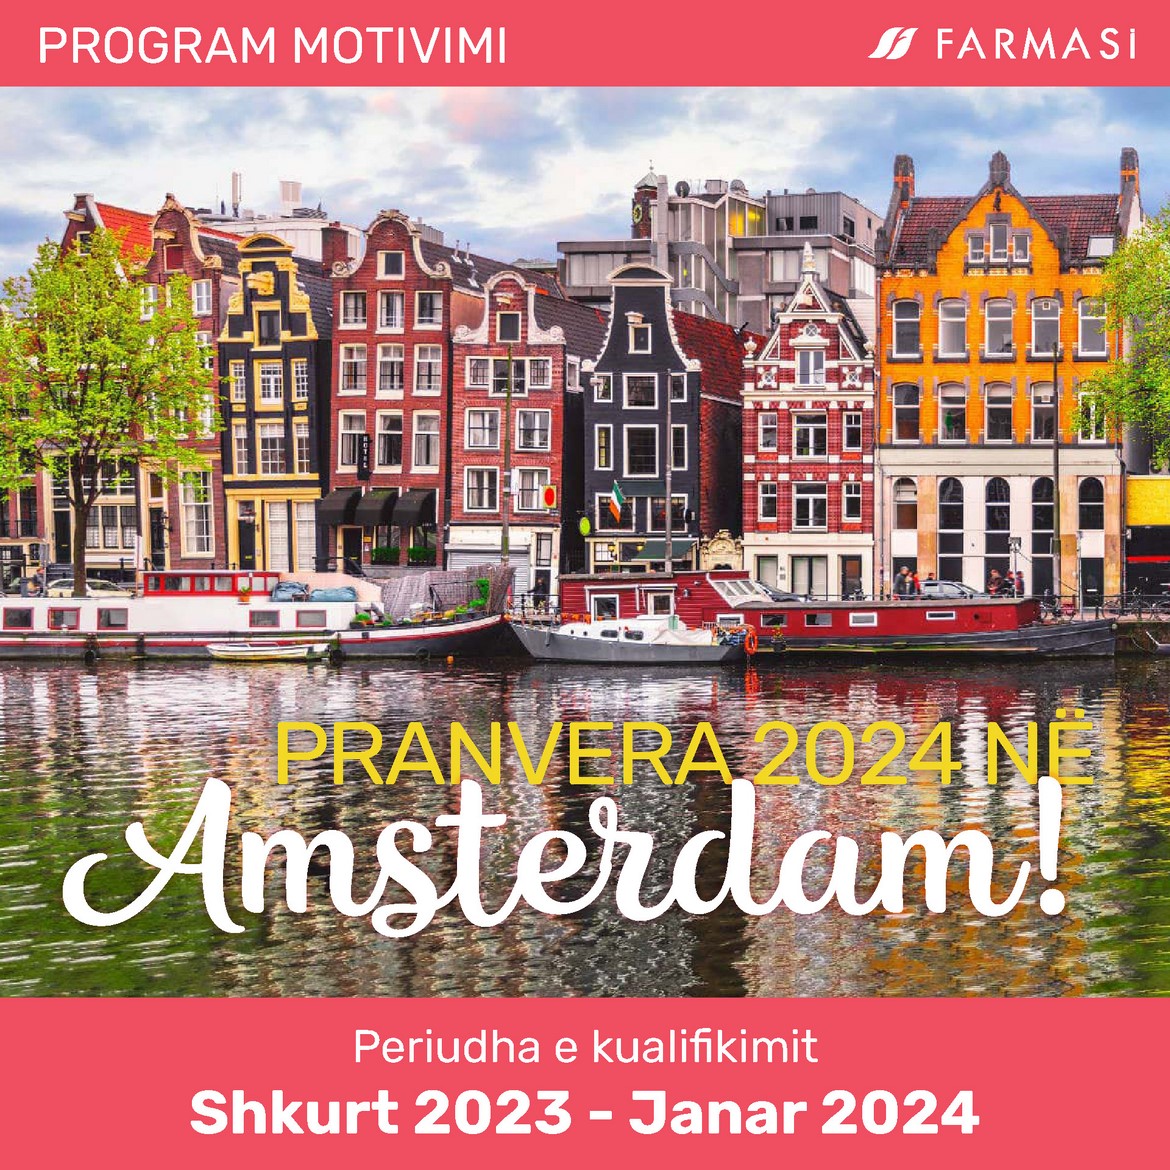 PRANVERA 2024 NË Amsterdam!